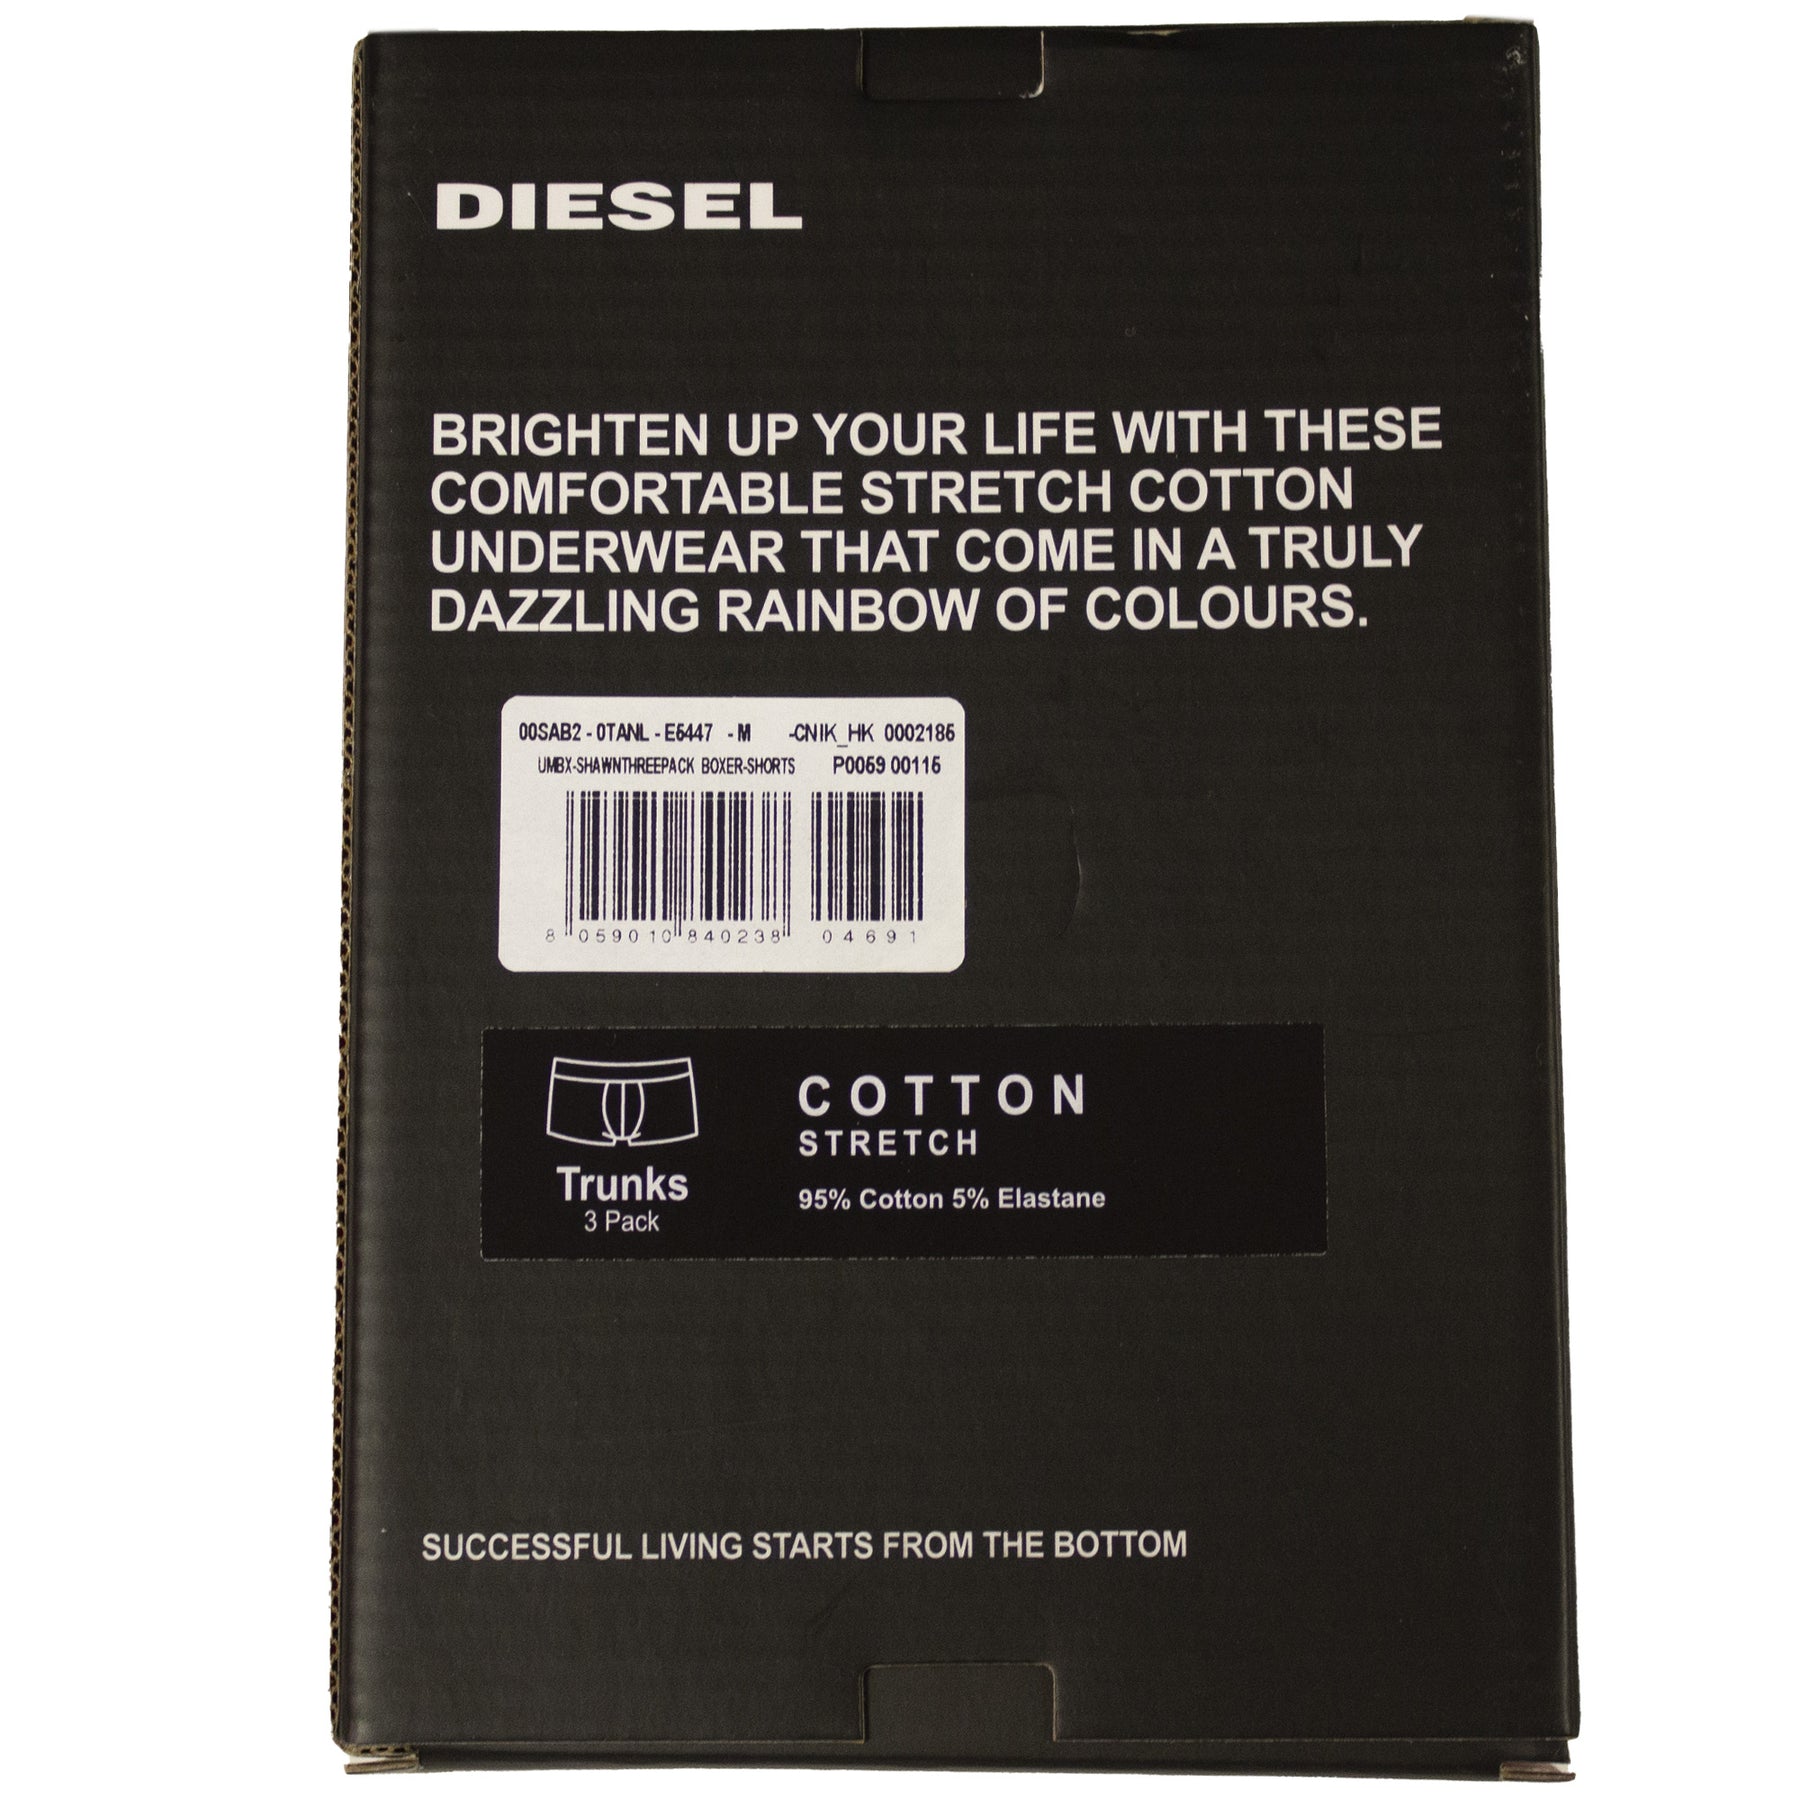 DIESEL_BXRS ALL-3PK Copy of Diesel | Mens Assorted Boxers (3 Pack) DIESEL RAWDENIM